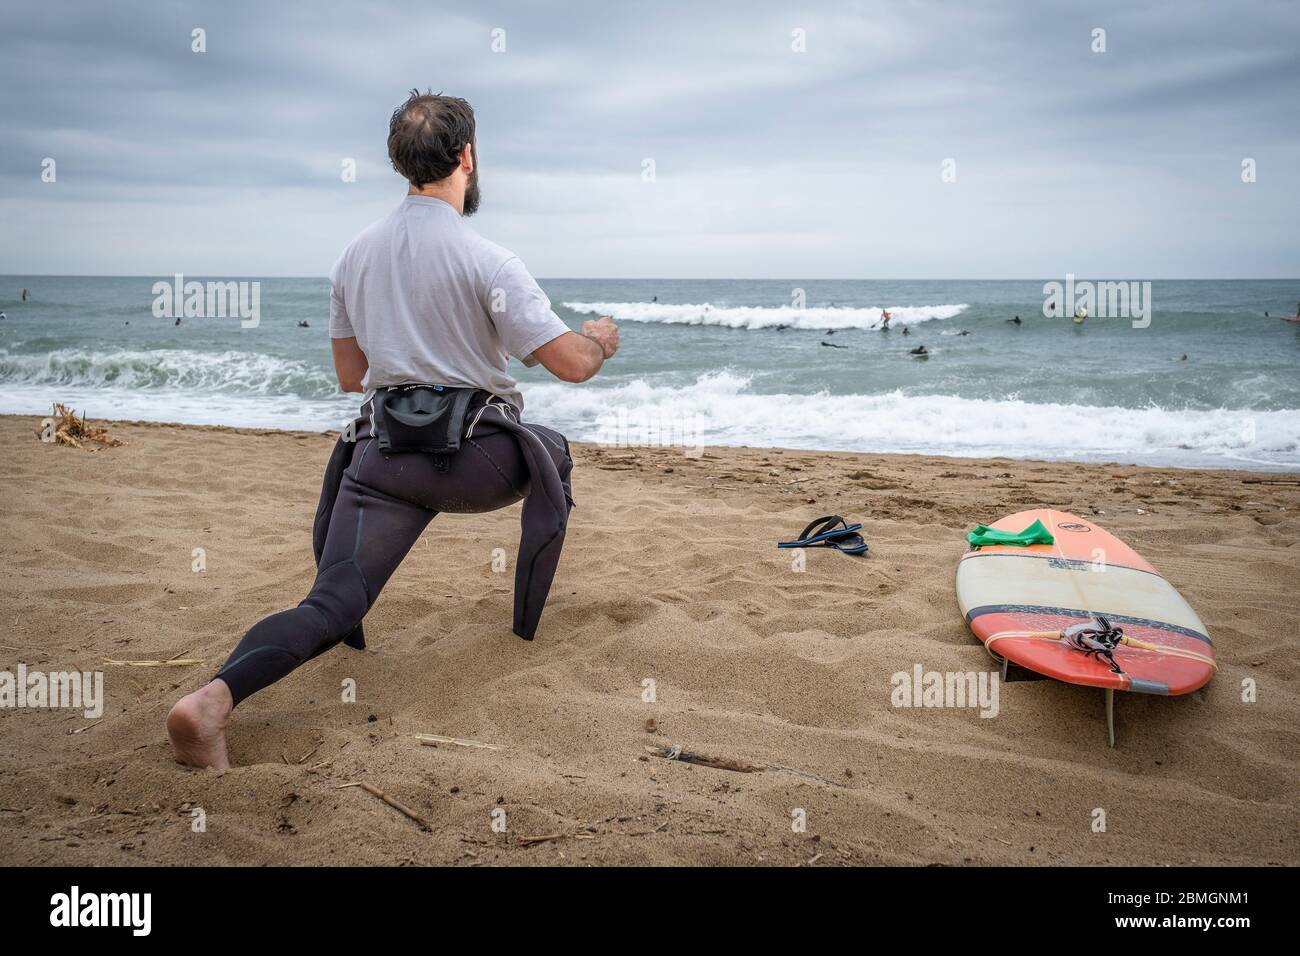 Un surfeur est vu s'étirer pendant les créneaux autorisés pour la pratique du sport dans le cadre de la pandémie du coronavirus.phase zéro permet à Barcelone de rouvrir les plages pour le sport individuel réglementé dans les tranches horaires en raison de la contagion de Covid-19. Banque D'Images